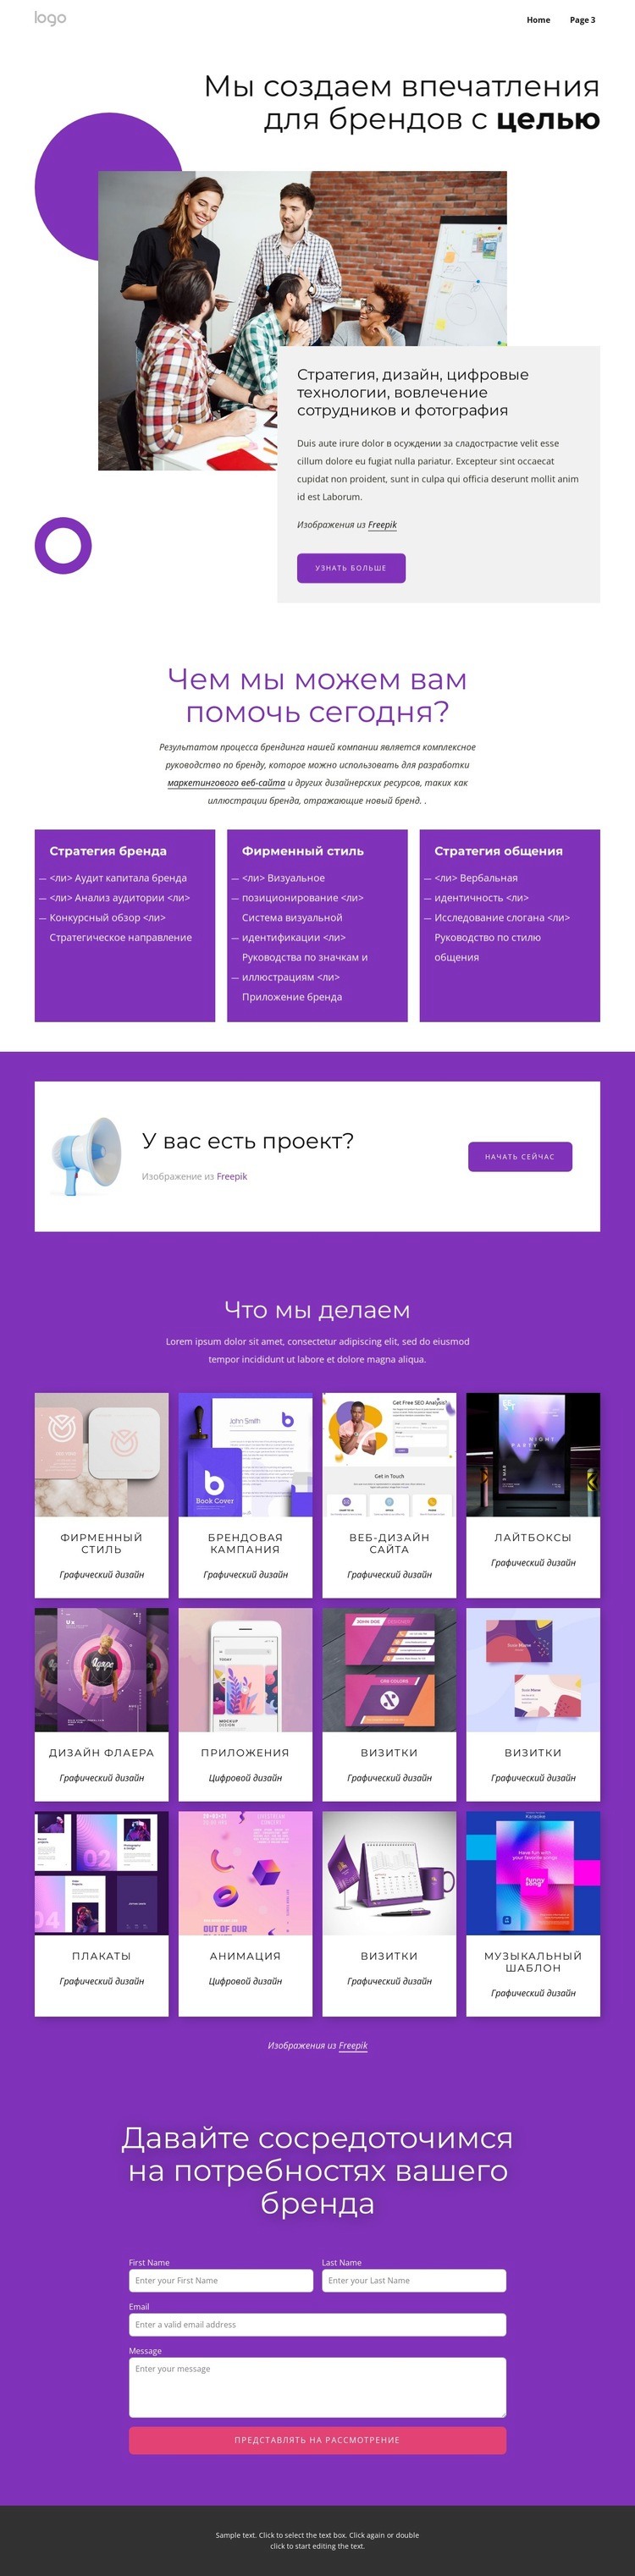 Полный брендинг и веб-дизайн Мокап веб-сайта